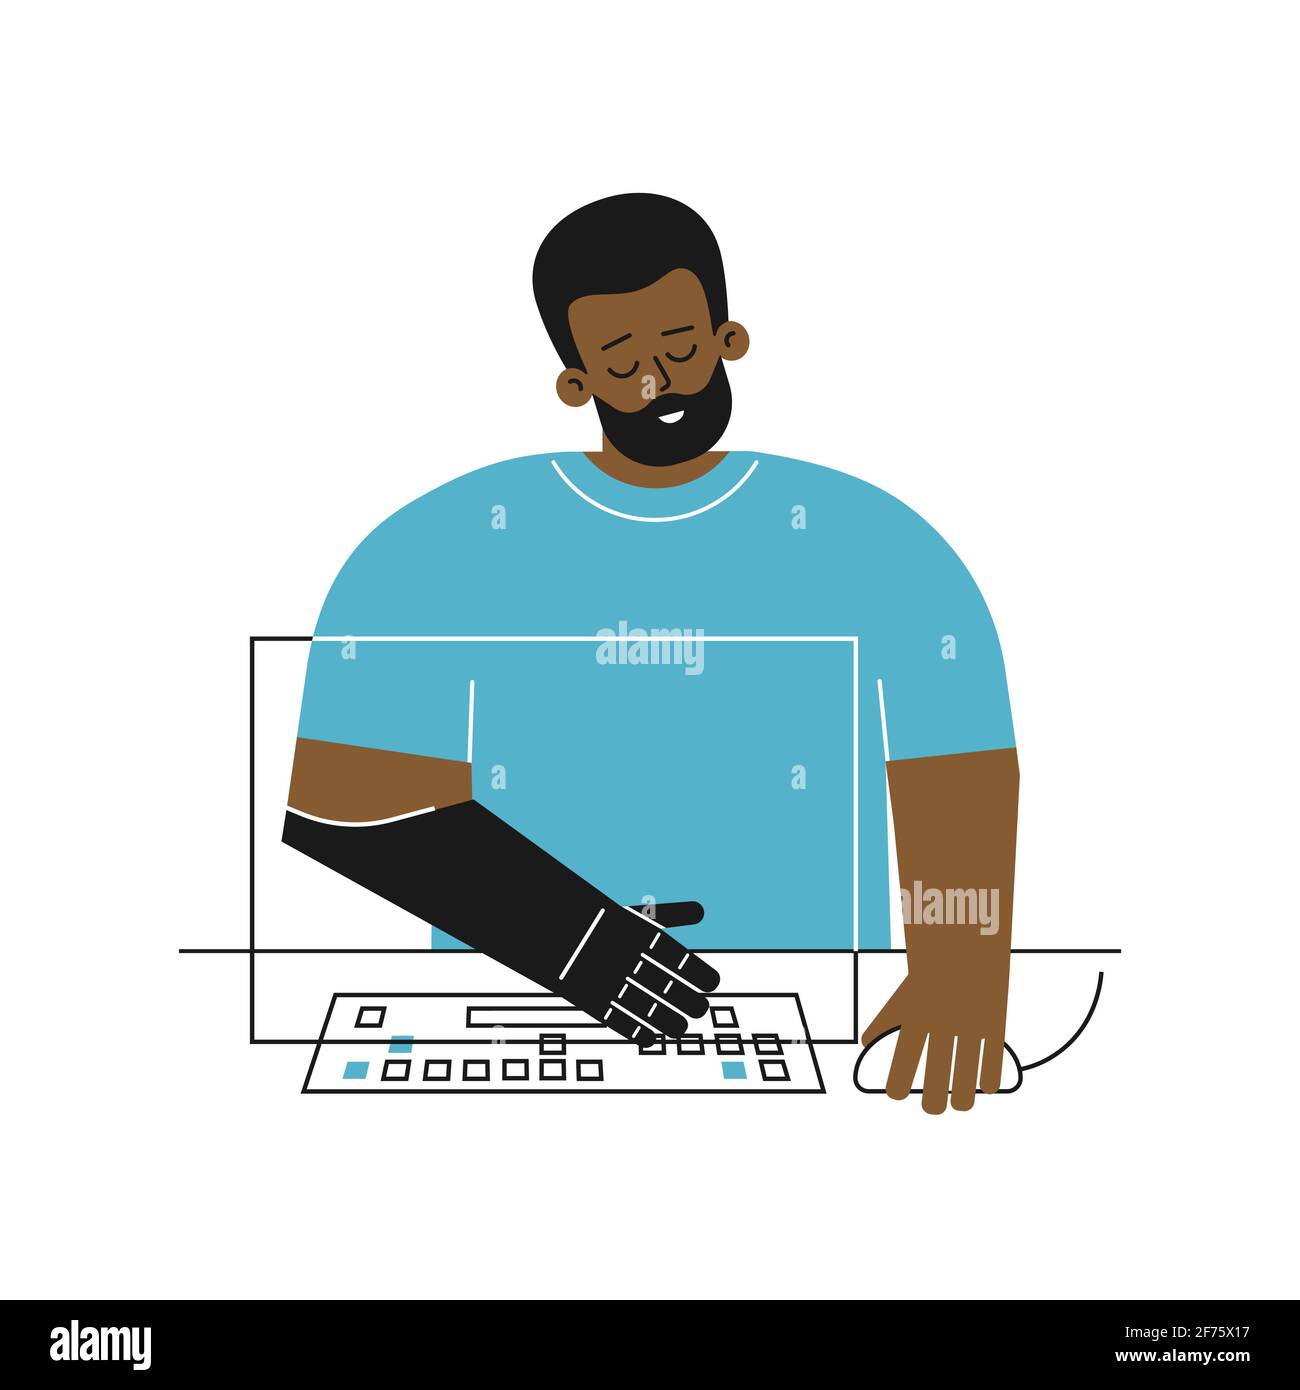 Concept vectoriel plat avec personne handicapée. Caricature afro-américaine gars a un bras artificiel de membre. Les types d'homme sur le clavier de l'ordinateur utilisant le bras prothétique Illustration de Vecteur